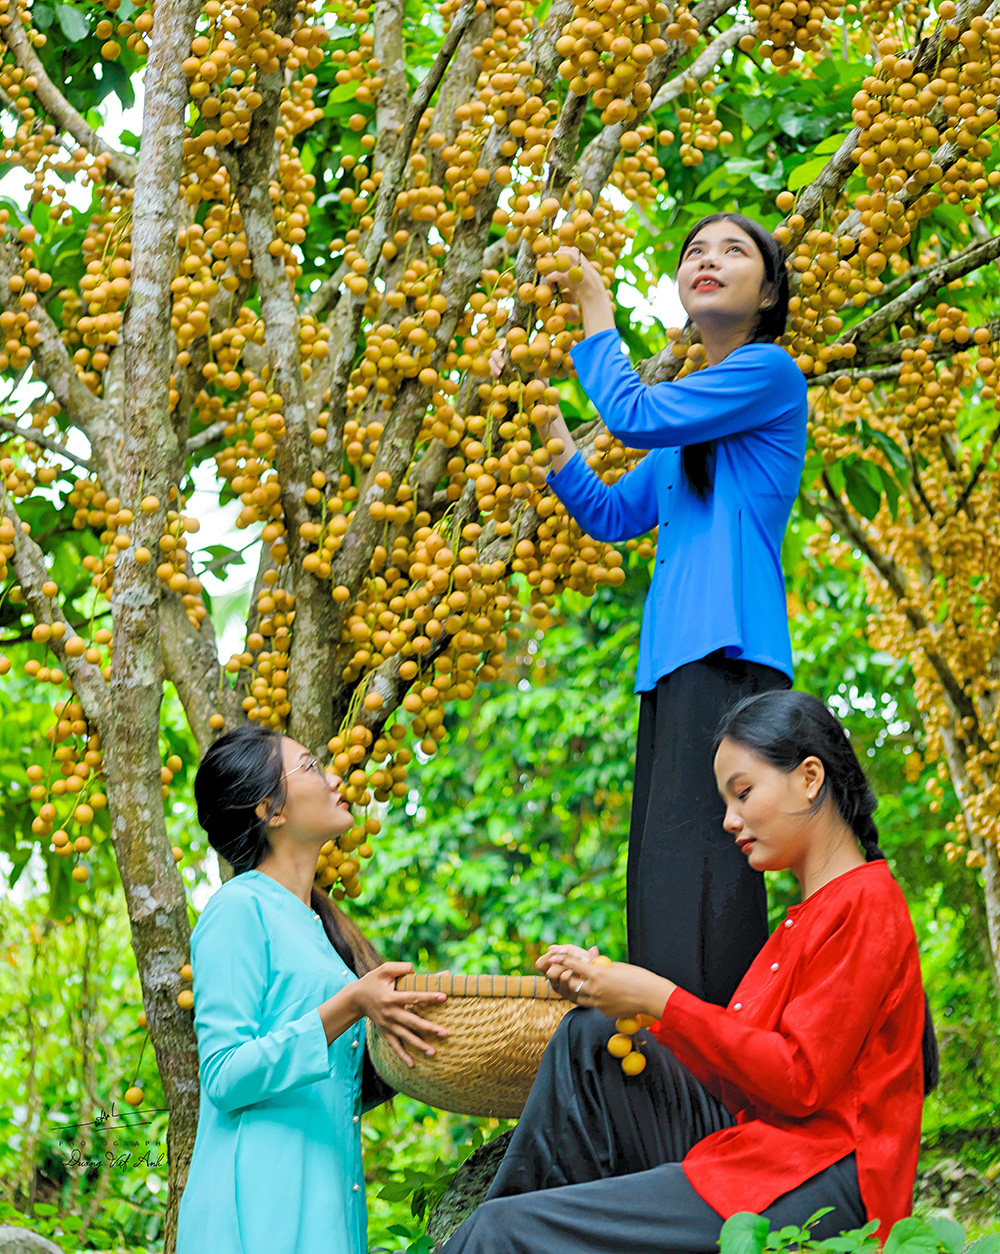 Ngọn núi nổi tiếng ở An Giang đang vào mùa trái gì mà vàng từ gốc lên ngọn, khách kéo về đông vui? - Ảnh 6.